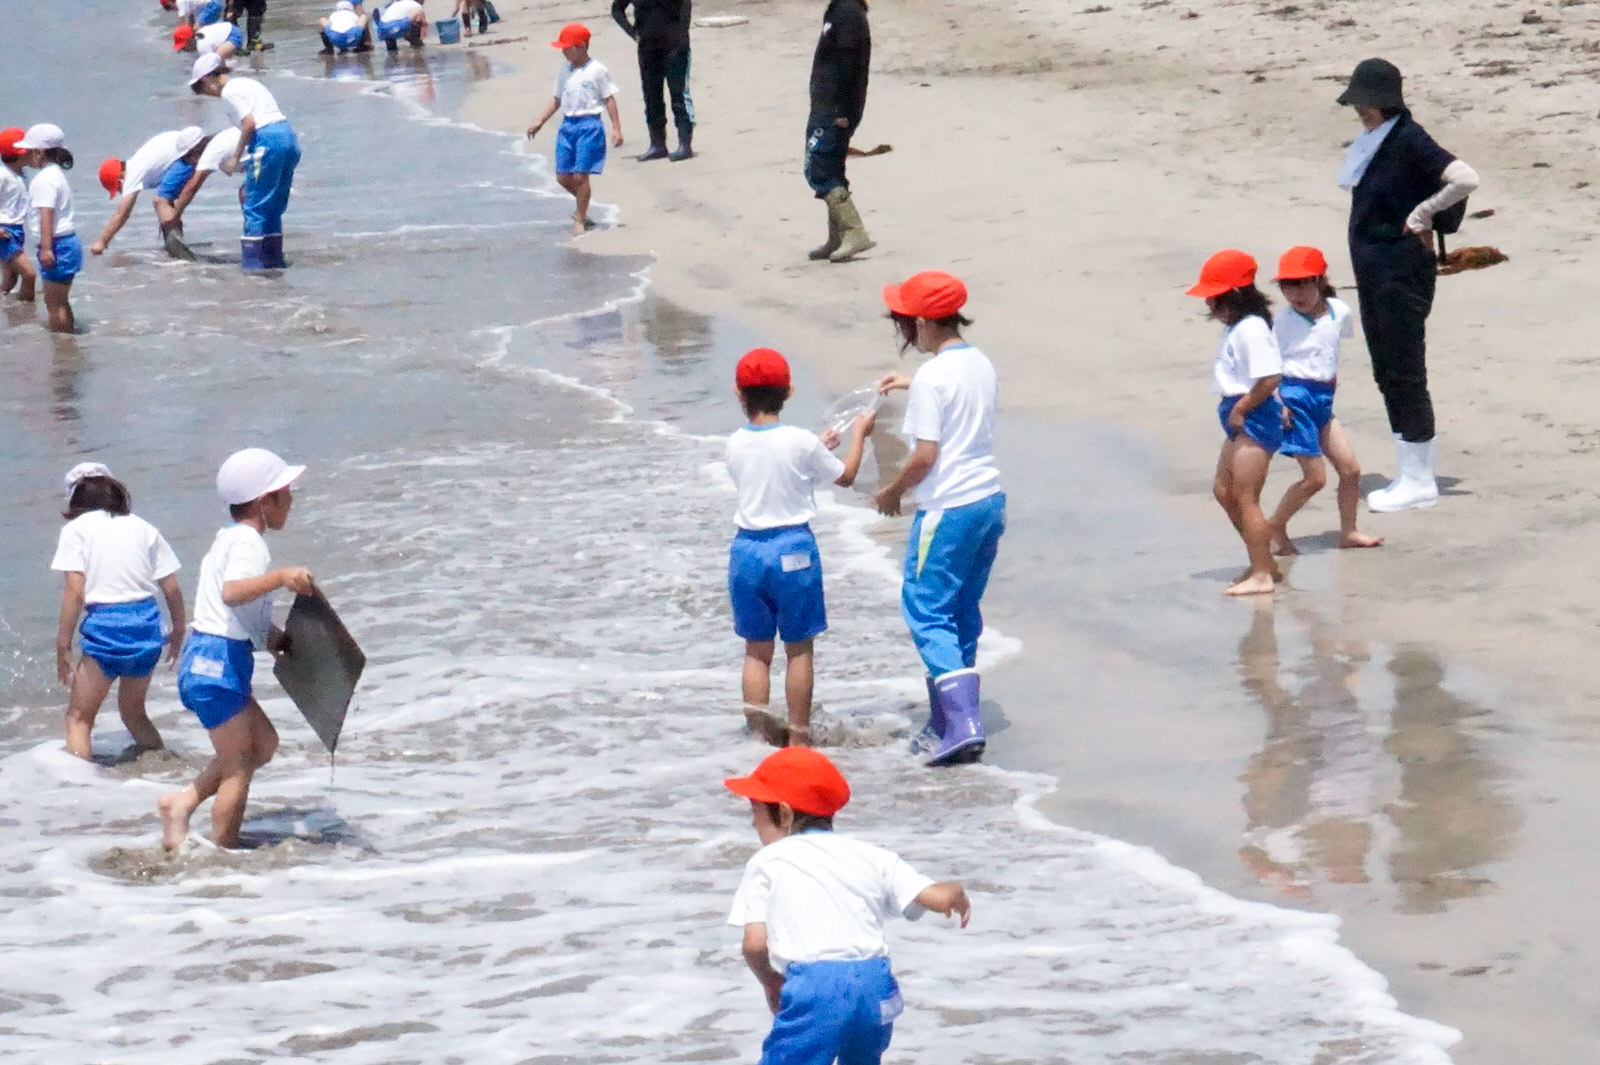 歌津地区の長須賀海岸「ふるさとの海に親しむ会」開催レポート